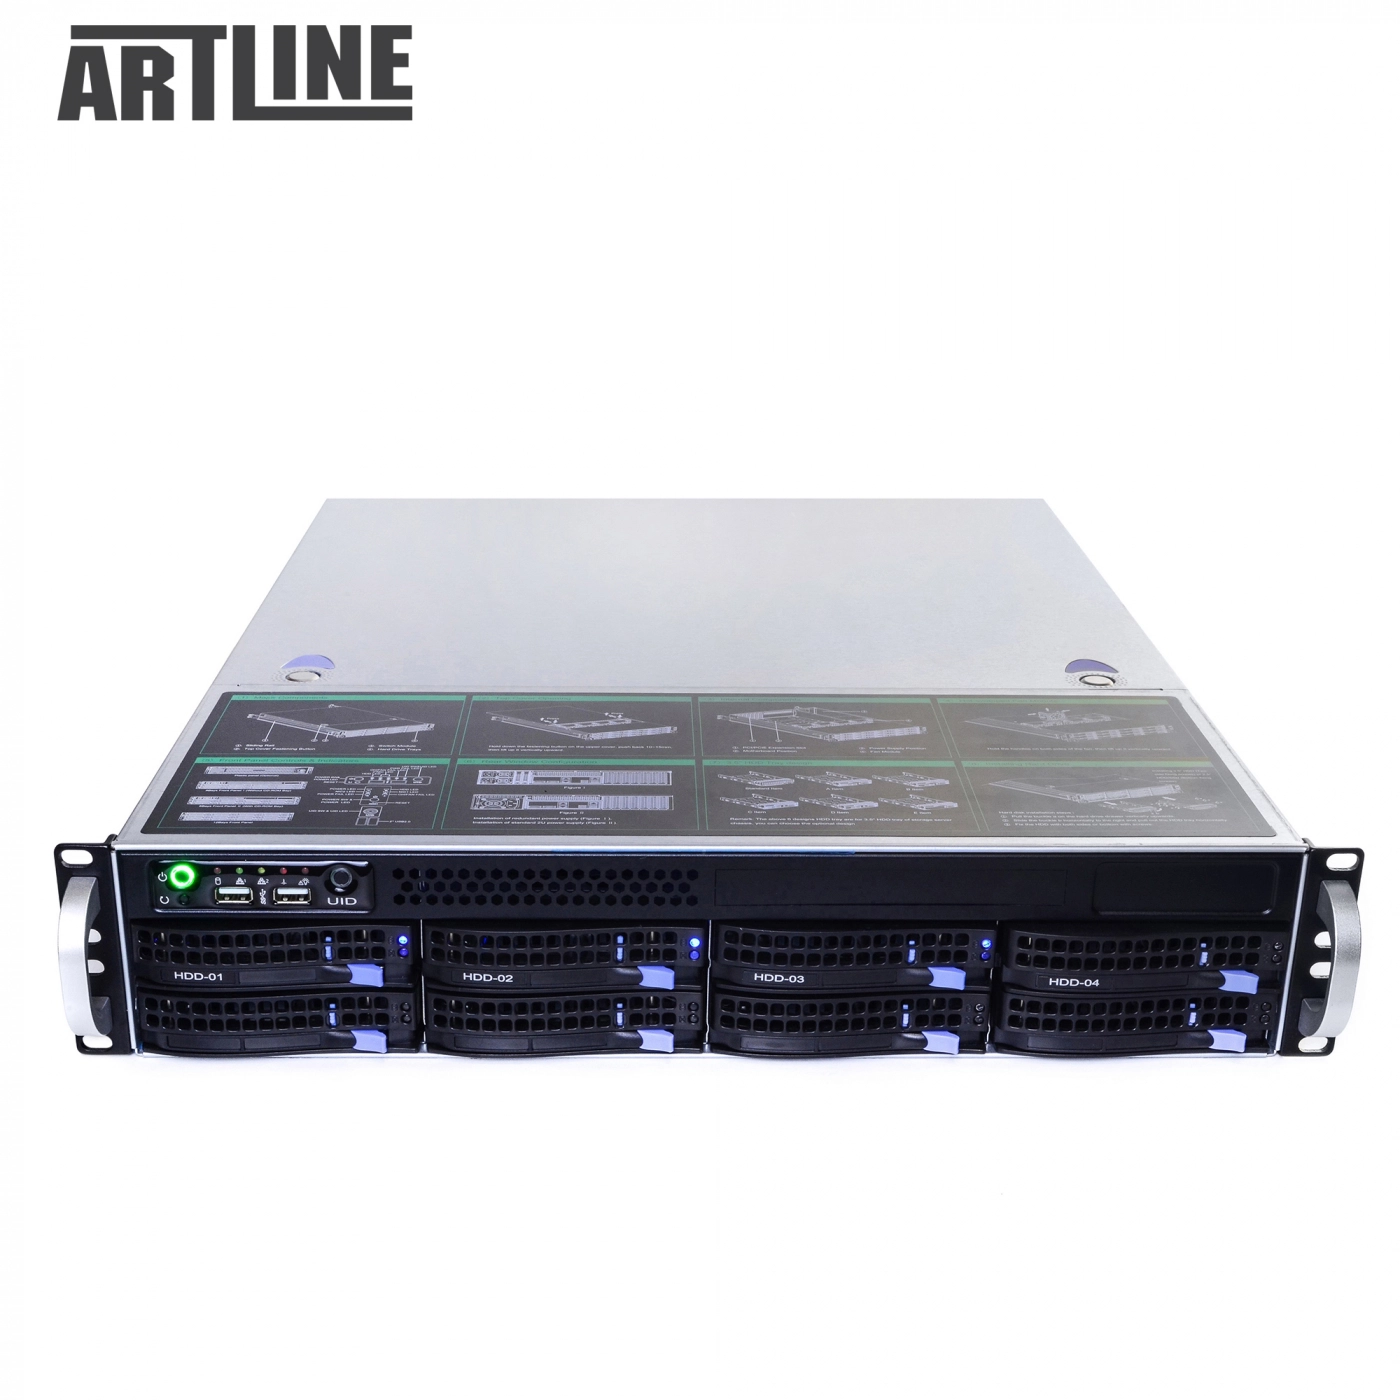 Купить Сервер ARTLINE Business R38v07 - фото 10